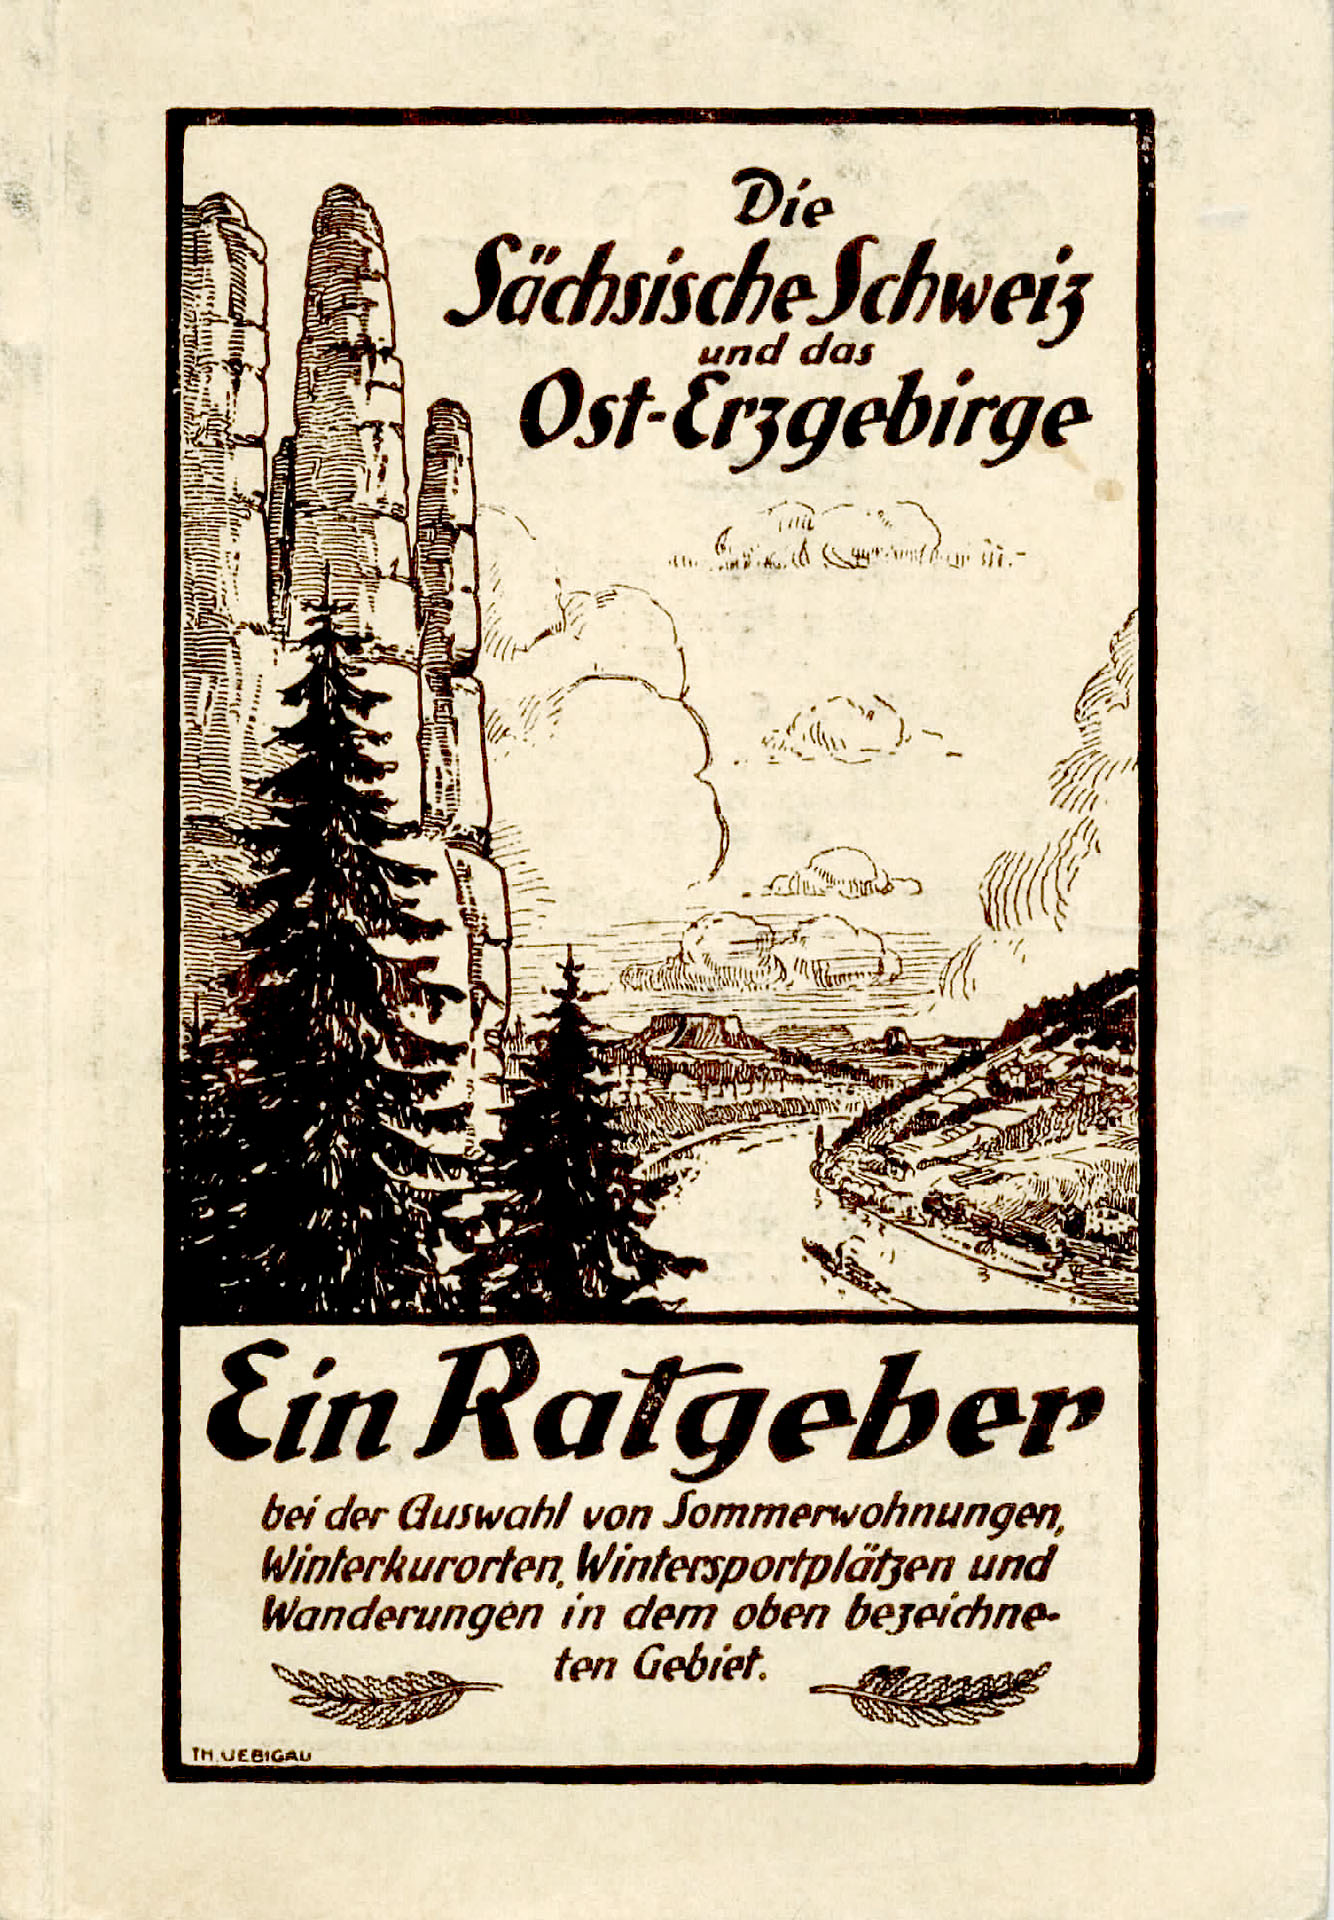 Die Sächsische Schweiz und das Ost - Erzgebirge - Gebirhsverein für die Sächsische Schweiz